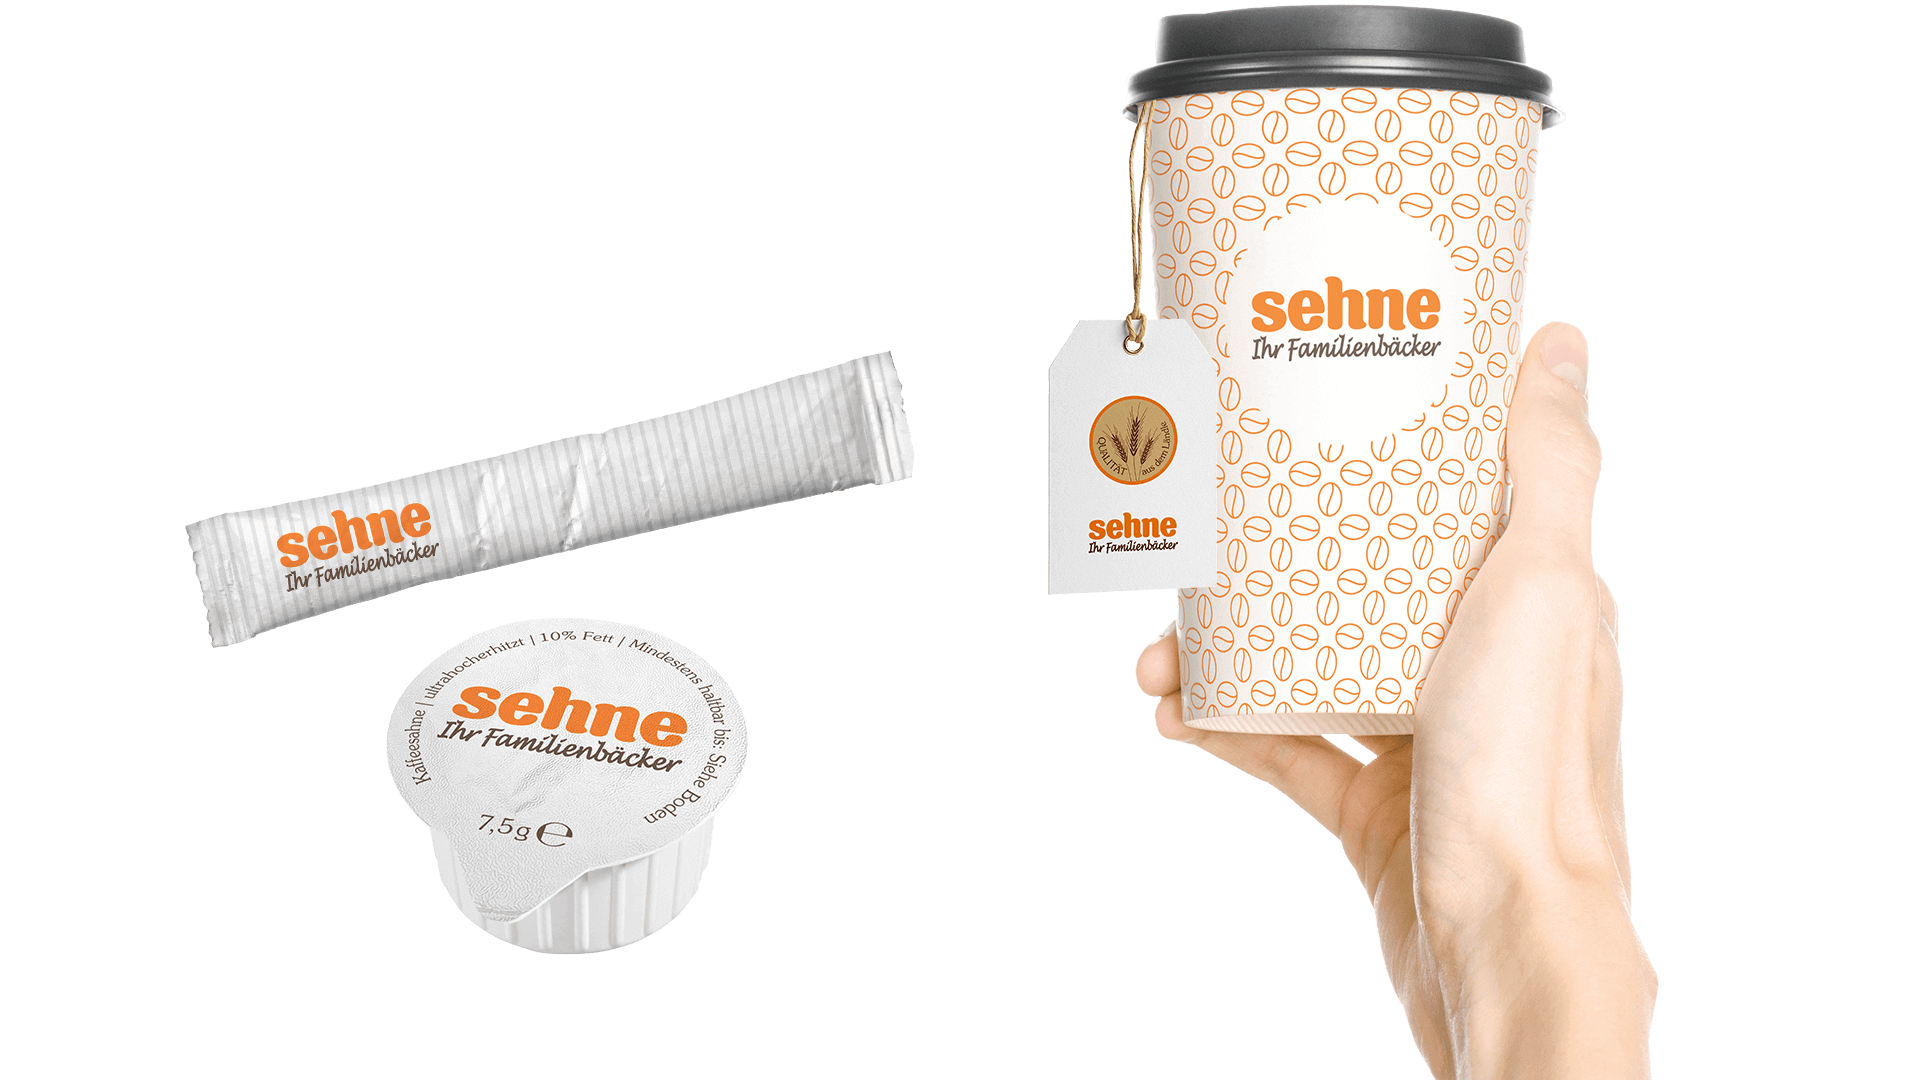 Sehne Corporate Design: Beispiele (Kaffeebecher, Zuckertütchen, Kaffeesahne)